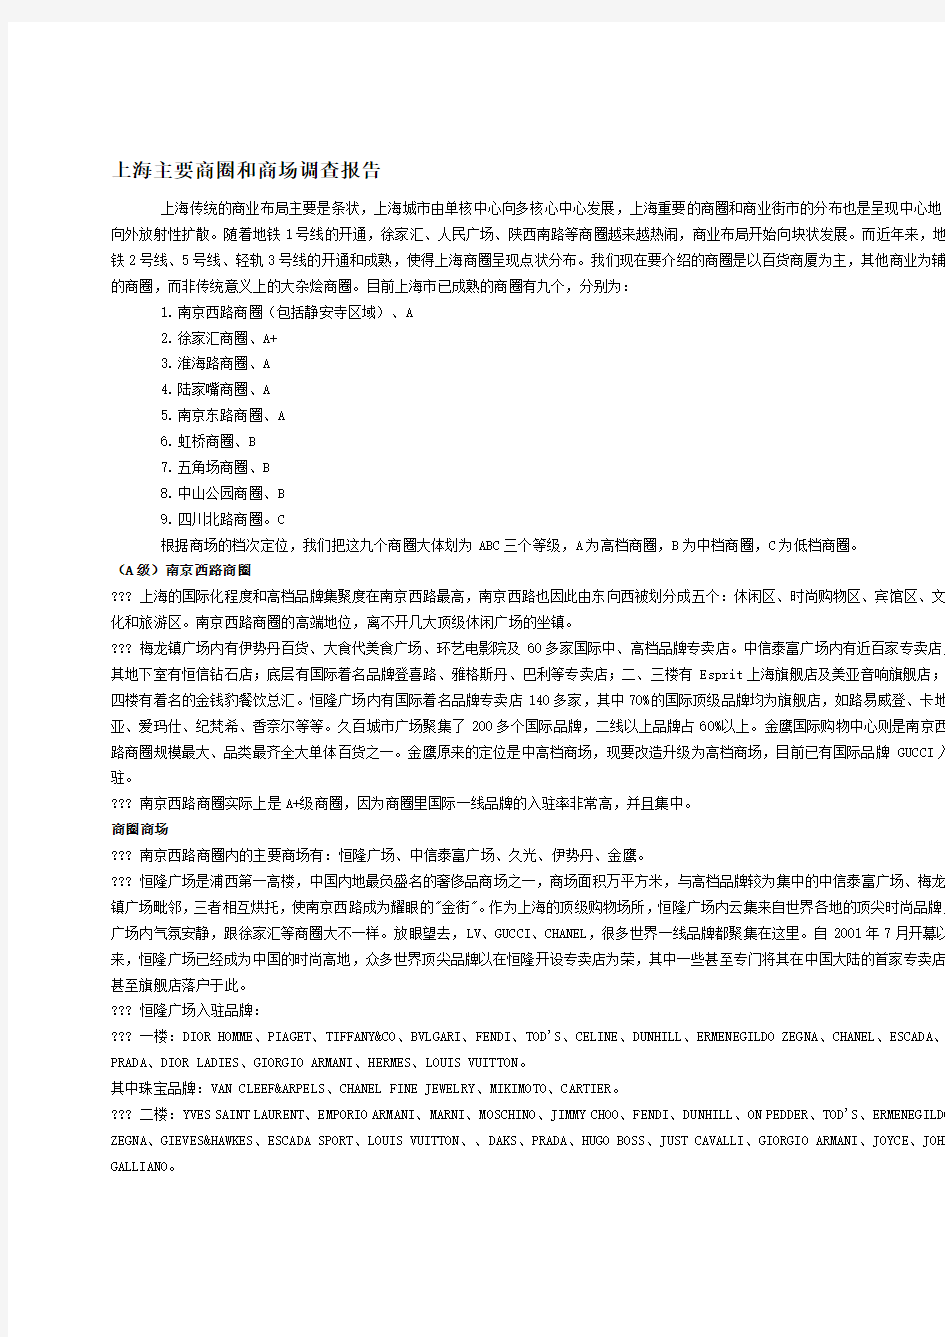 上海主要商圈和商场调查分析报告